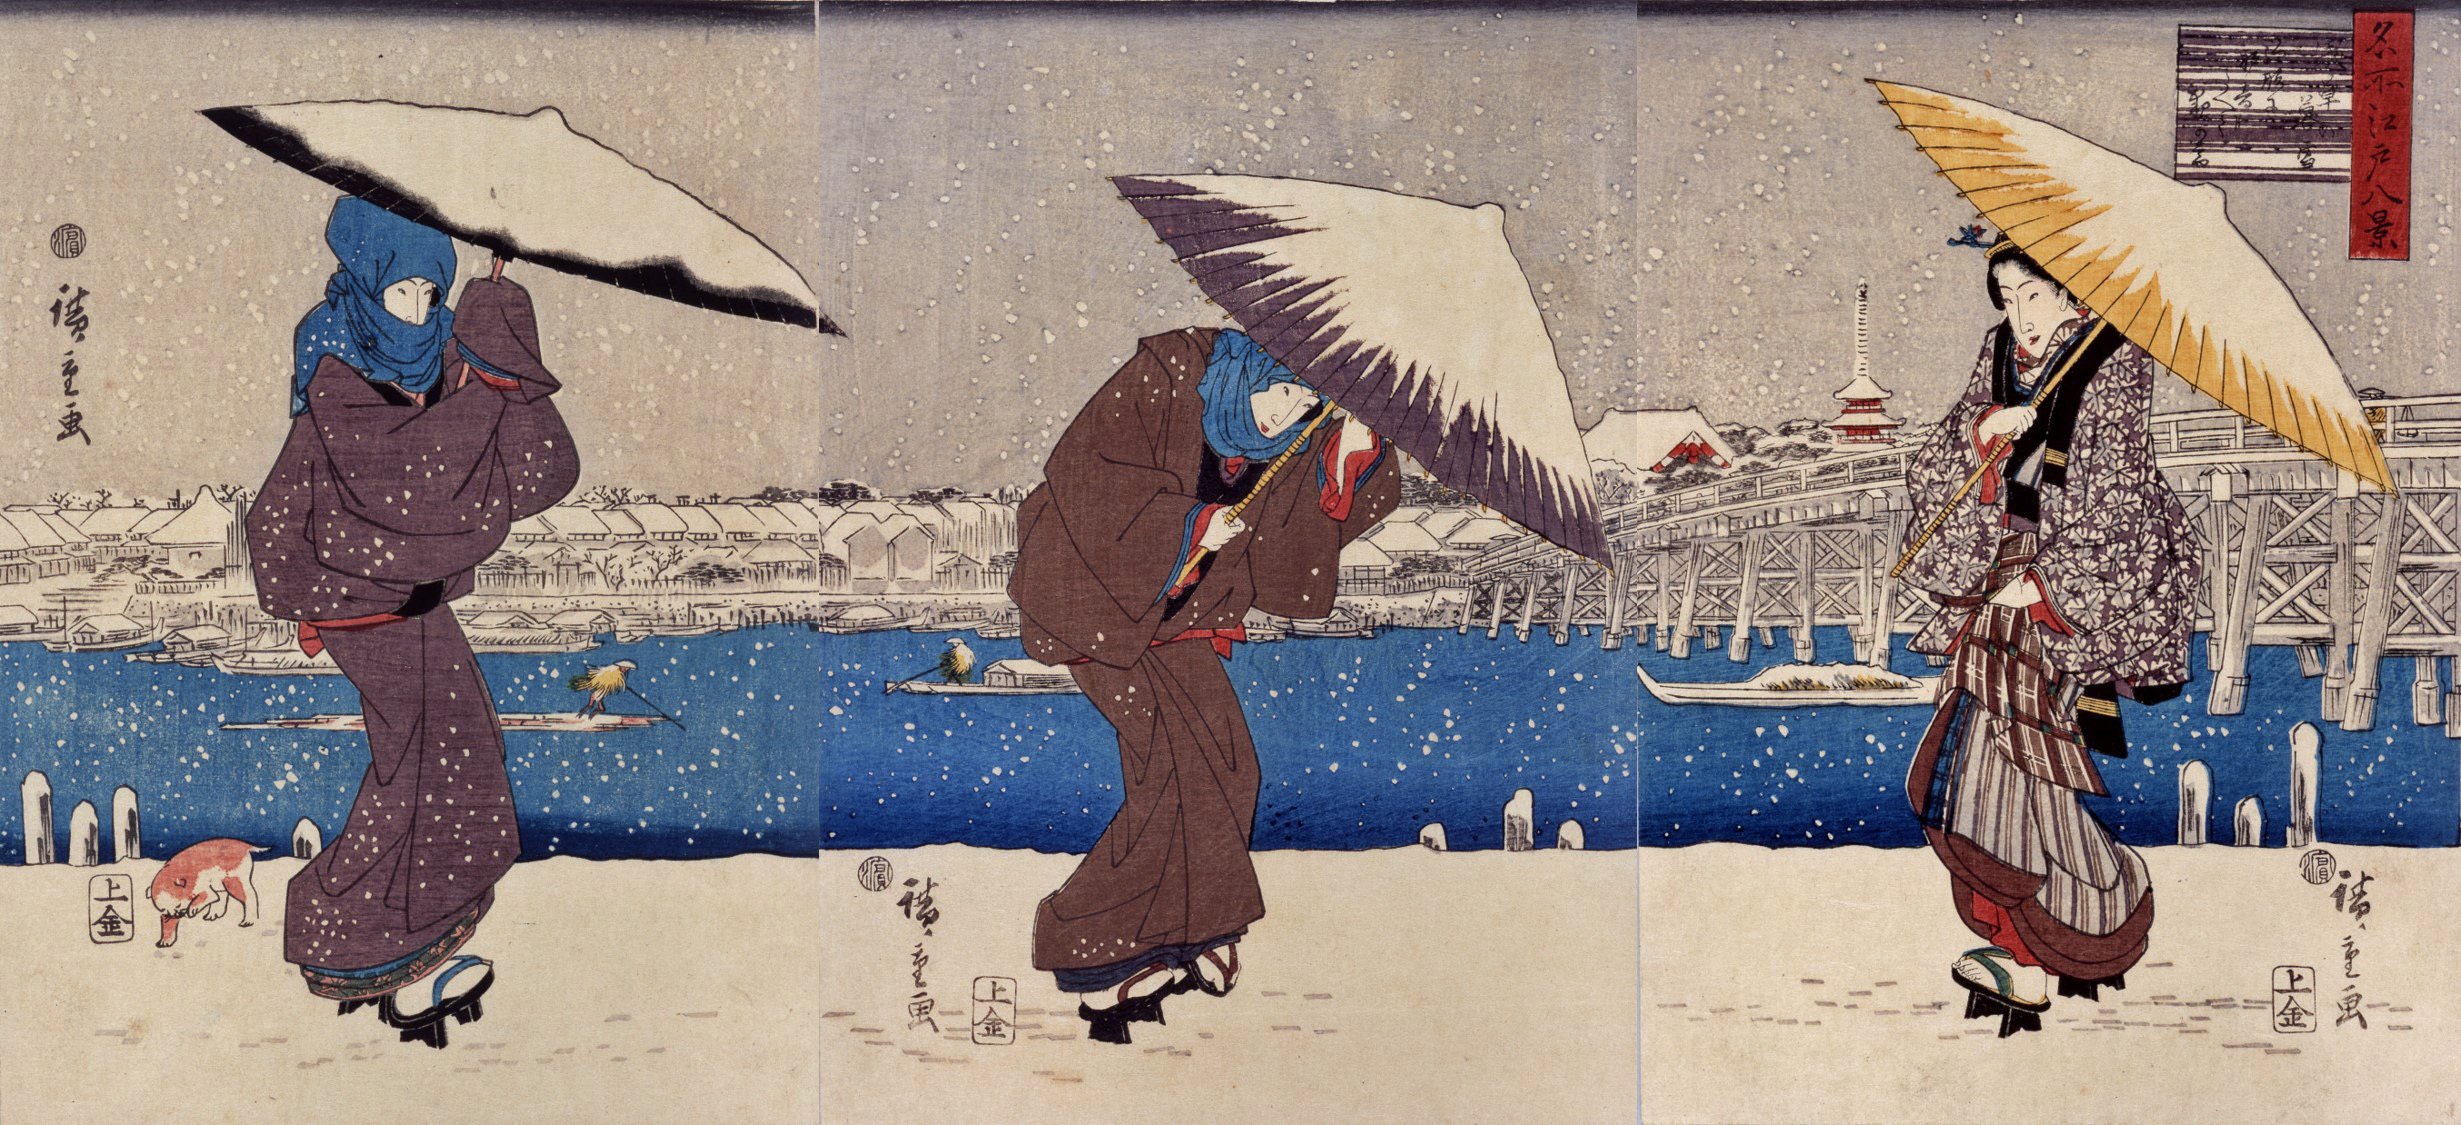 江戸時代のイヌが雪の中を駆けまわっているのか、確かめてみた。｜太田